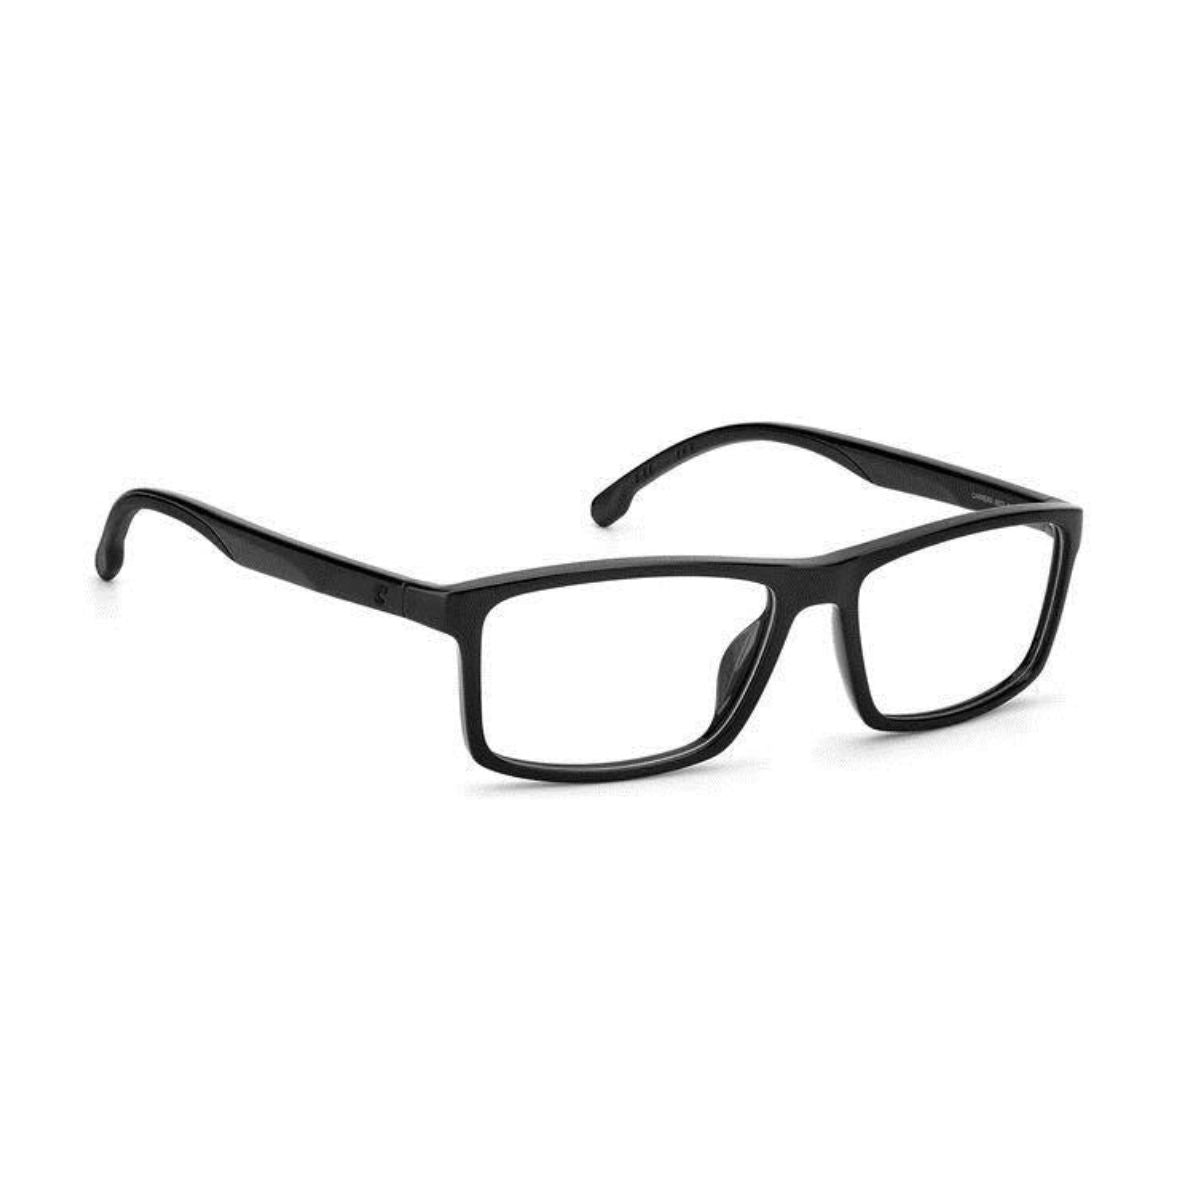 "Carrera 8872 807 optical eyewear frame for men and women at optorium"